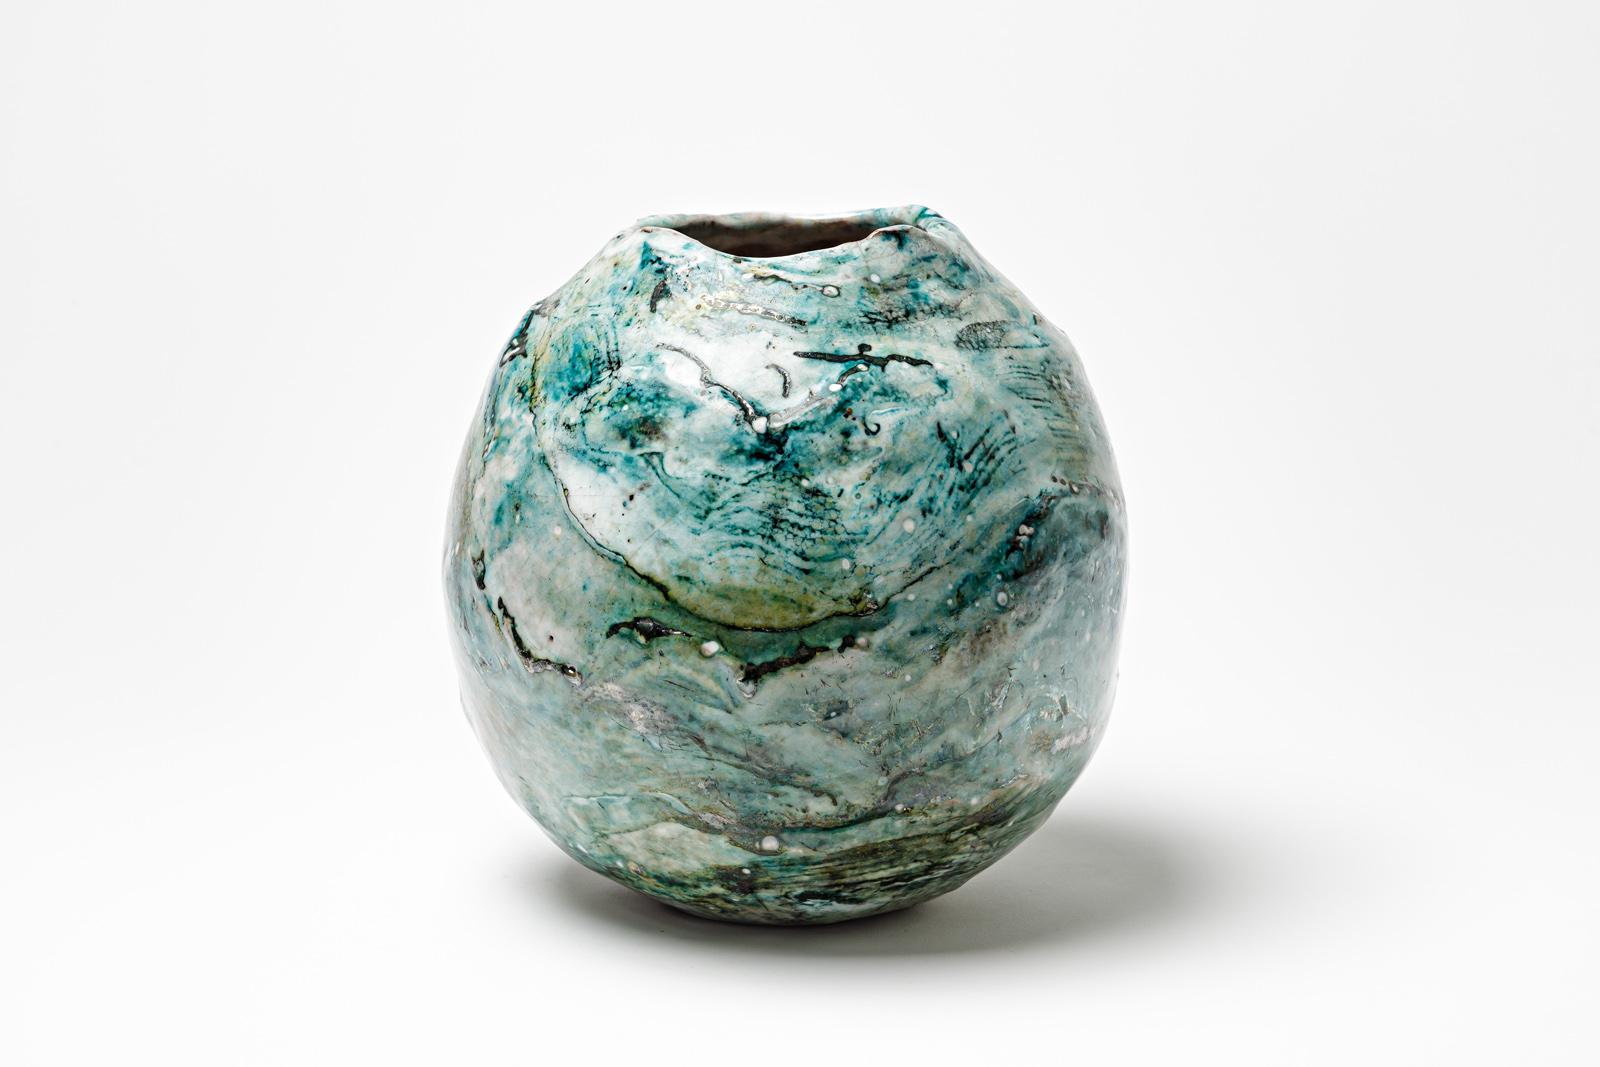 Vase en céramique émaillée bleue et blanche de Gisèle Buthod Garçon. 
Raku a tiré. Monogramme de l'artiste sous la base. Vers 1980-1990. 
H : 8.7' x 7.4' pouces.